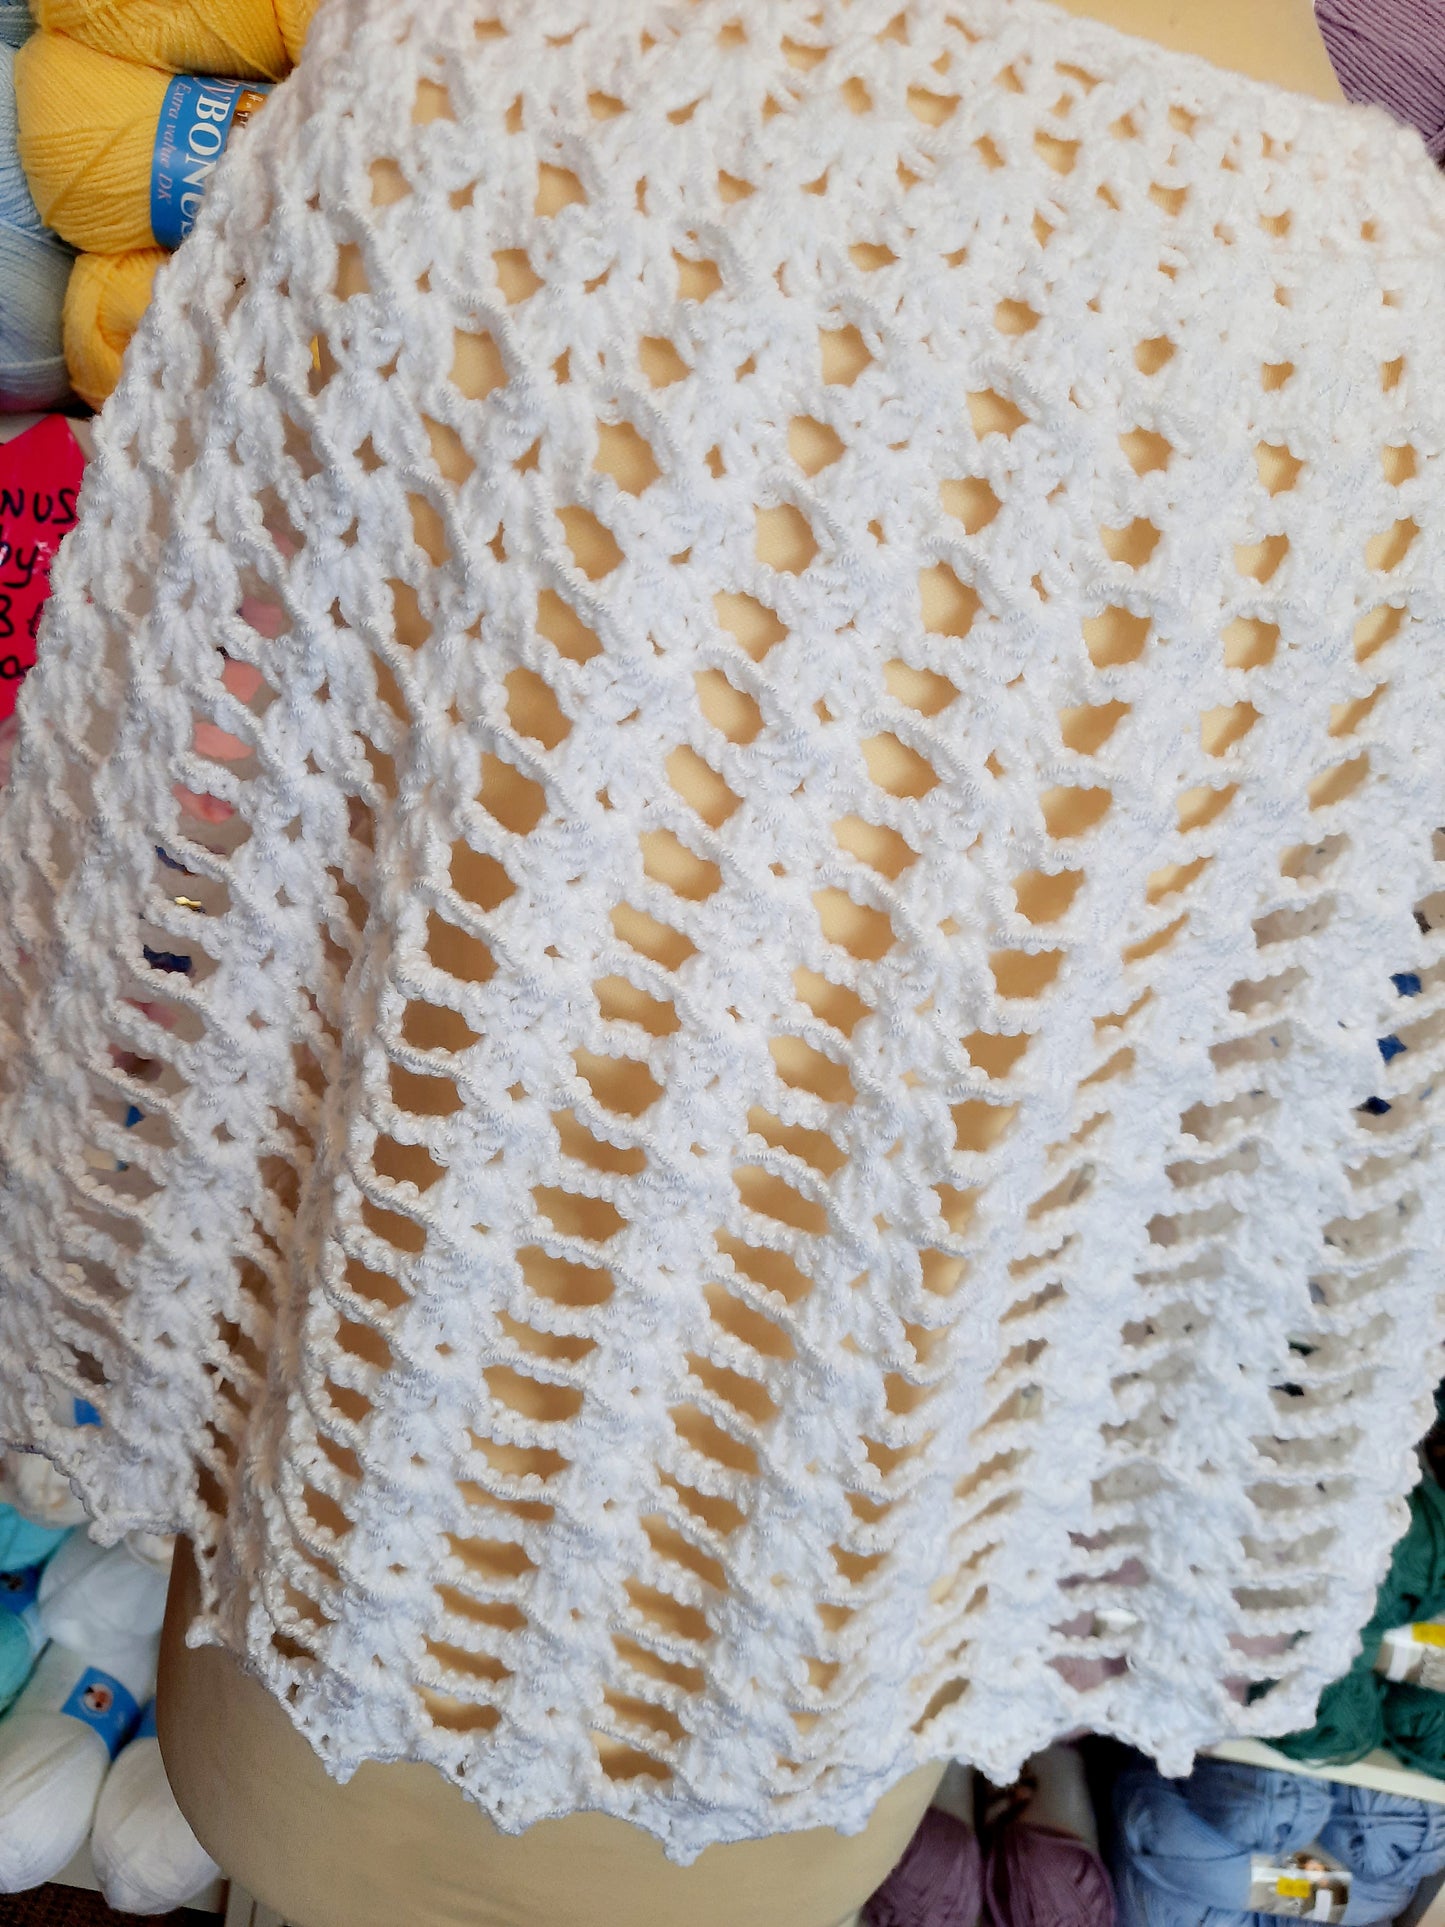 Crochet Cape Pattern